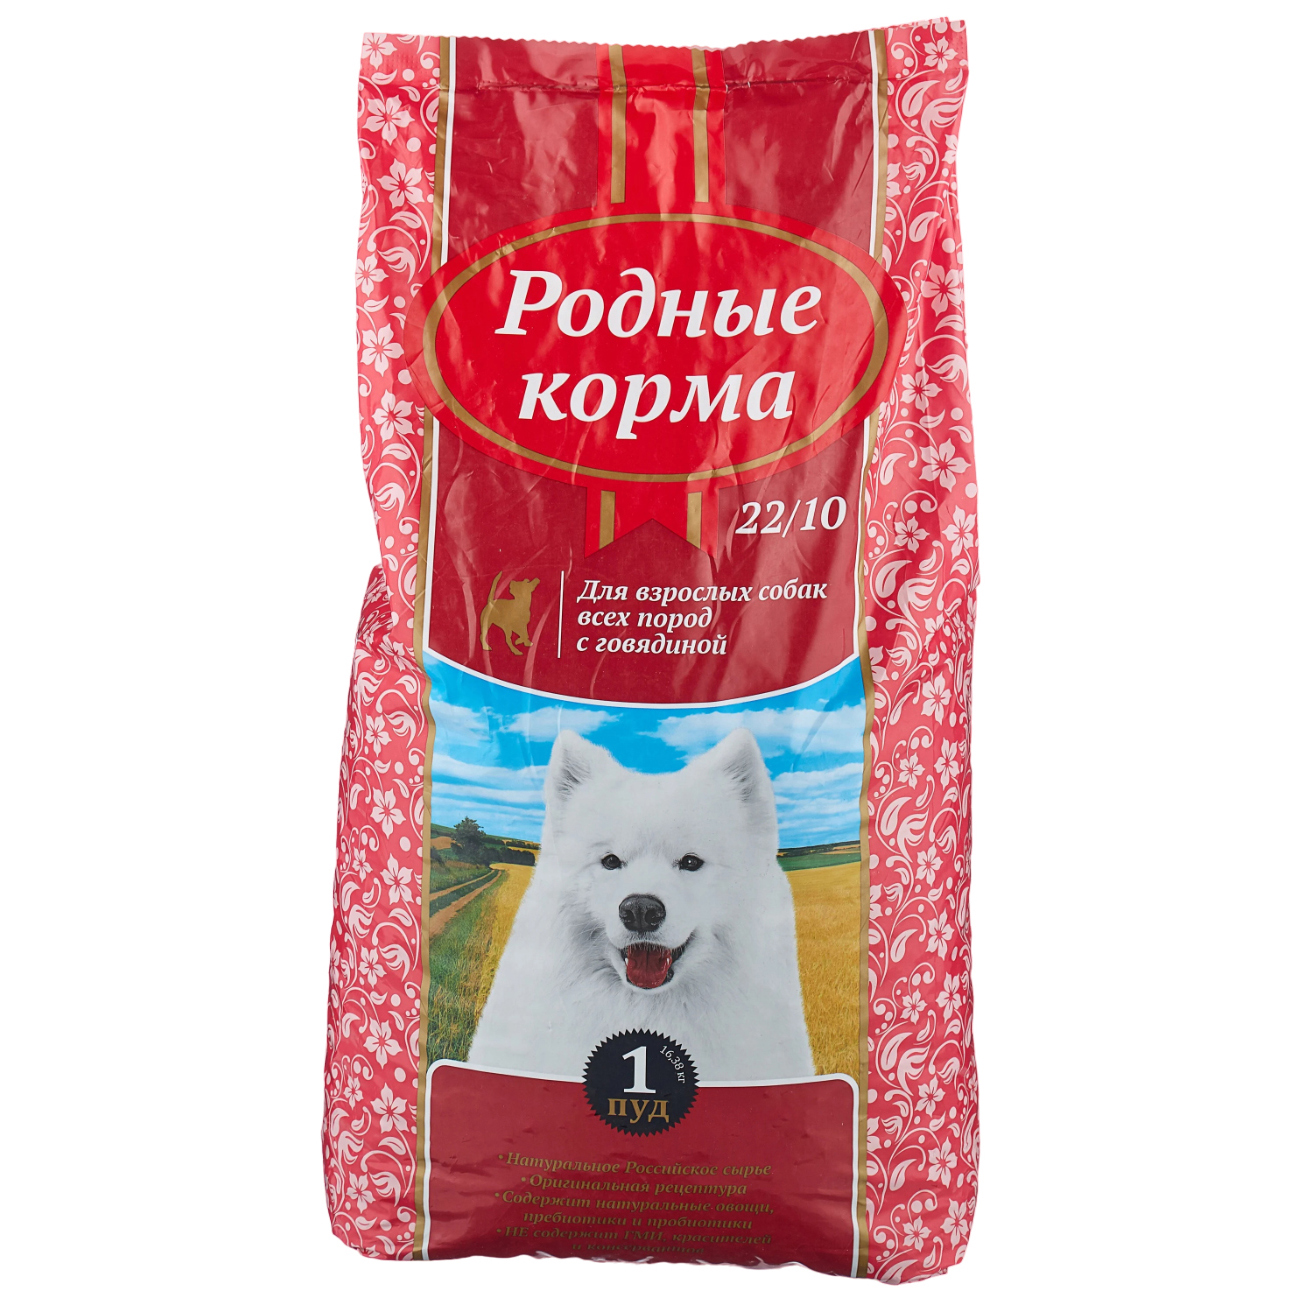 Родные Корма корм для взрослых собак всех пород, говядина, 16,38 кг - купить в Мегамаркет Москва Пушкино, цена на Мегамаркет